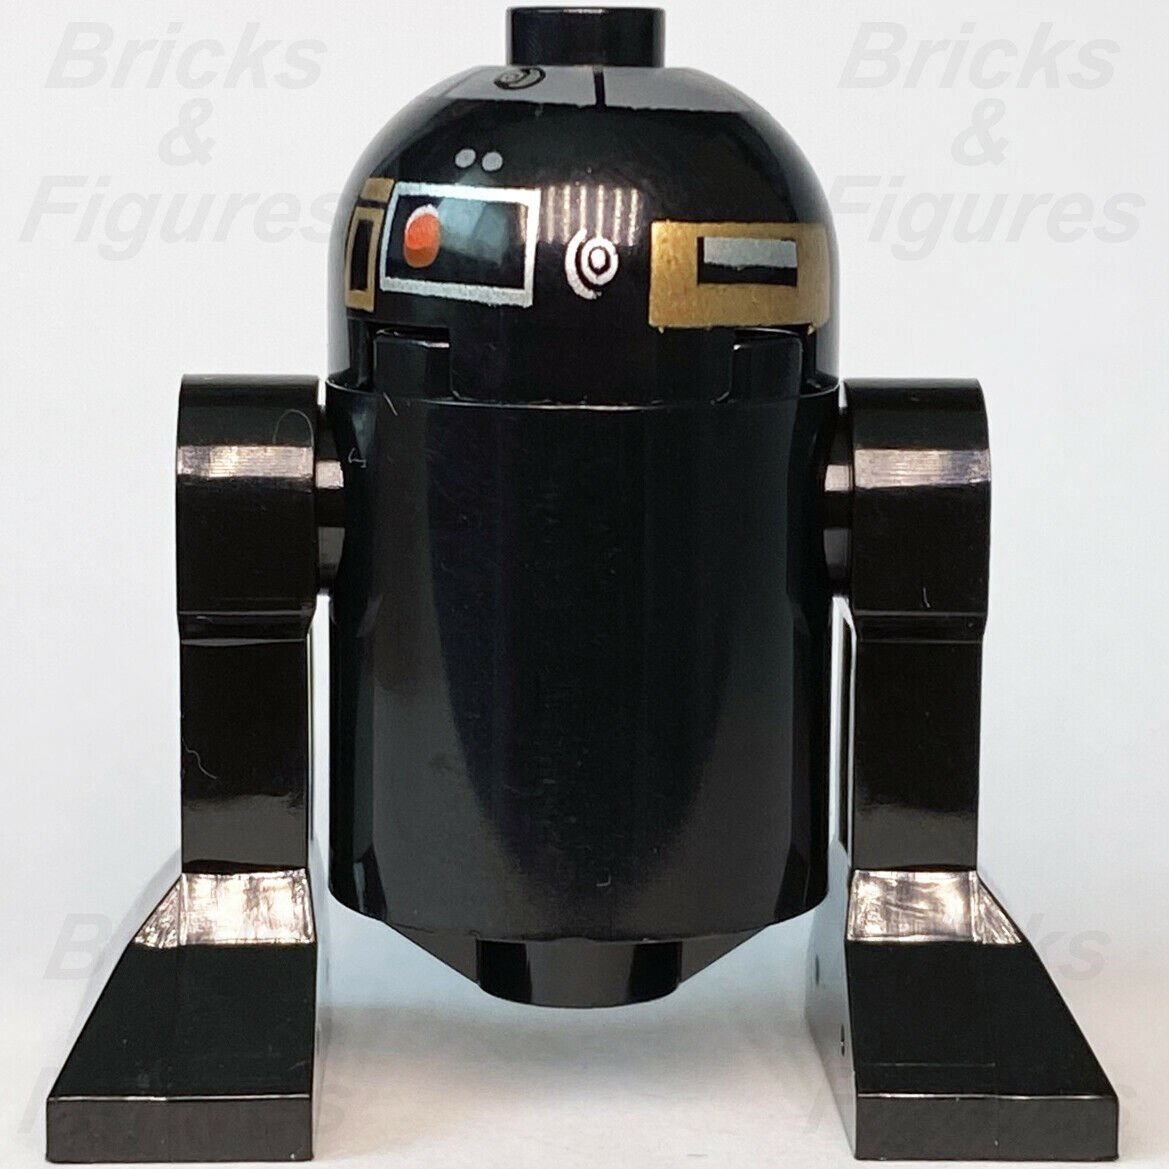 Star Wars LEGO R2-Q5 Astromech Droid Return of the Jedi Minifigure 10188 6211 - Bricks & Figures